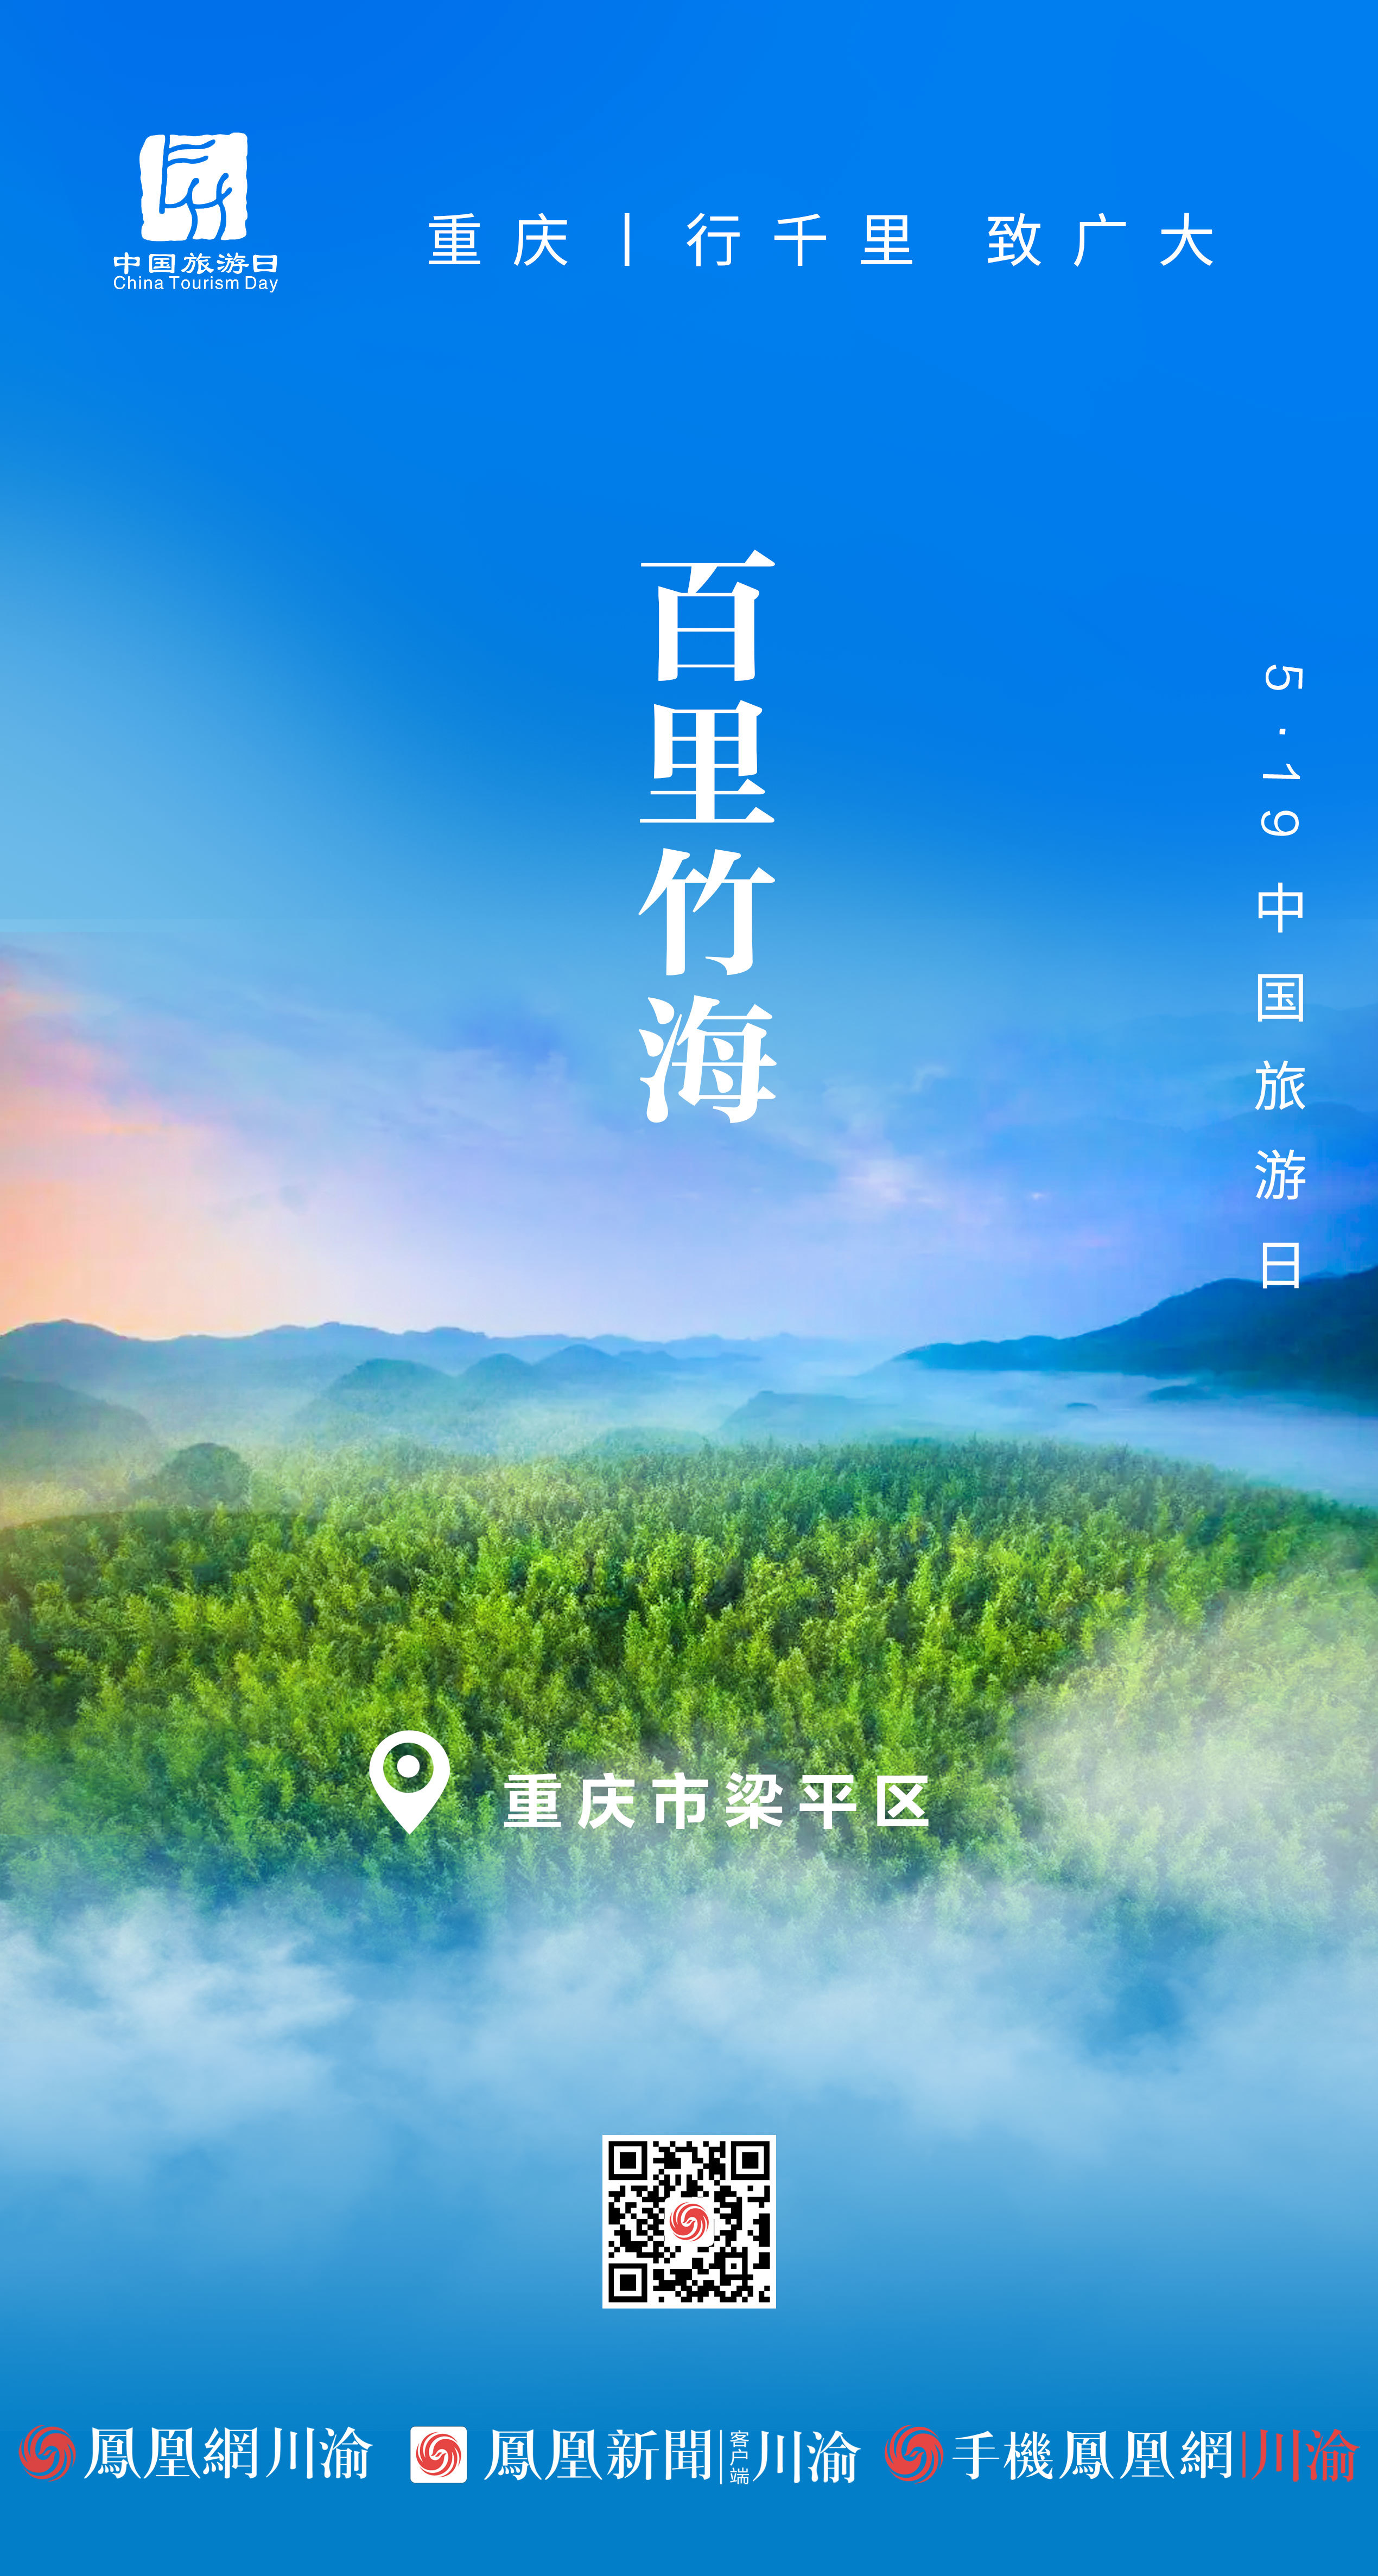 5·19中国旅游日丨阅重庆大美风景 品巴国文化底蕴